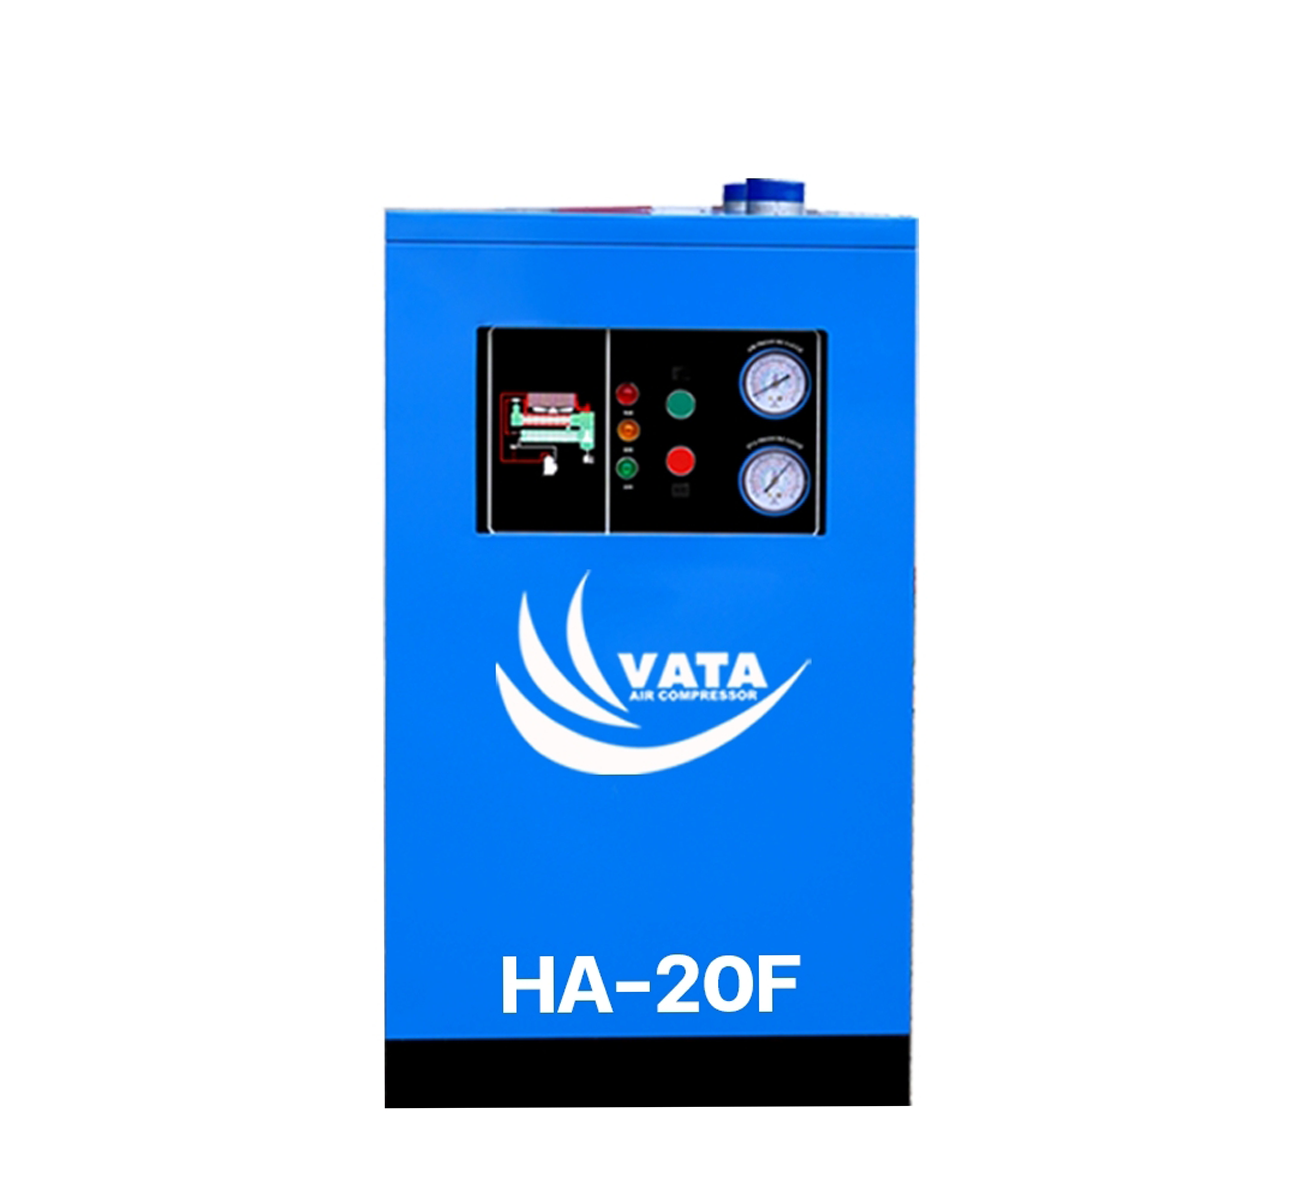 เครื่องทำลมแห้ง Refrigerated Air Dryer แบรนด์ VATA รุ่น HA-20F ขนาด 0.6 kw. ไฟฟ้า 220V รับประกันสินค้า 1 ปี ตามเงื่อนไขของบริษัทฯ